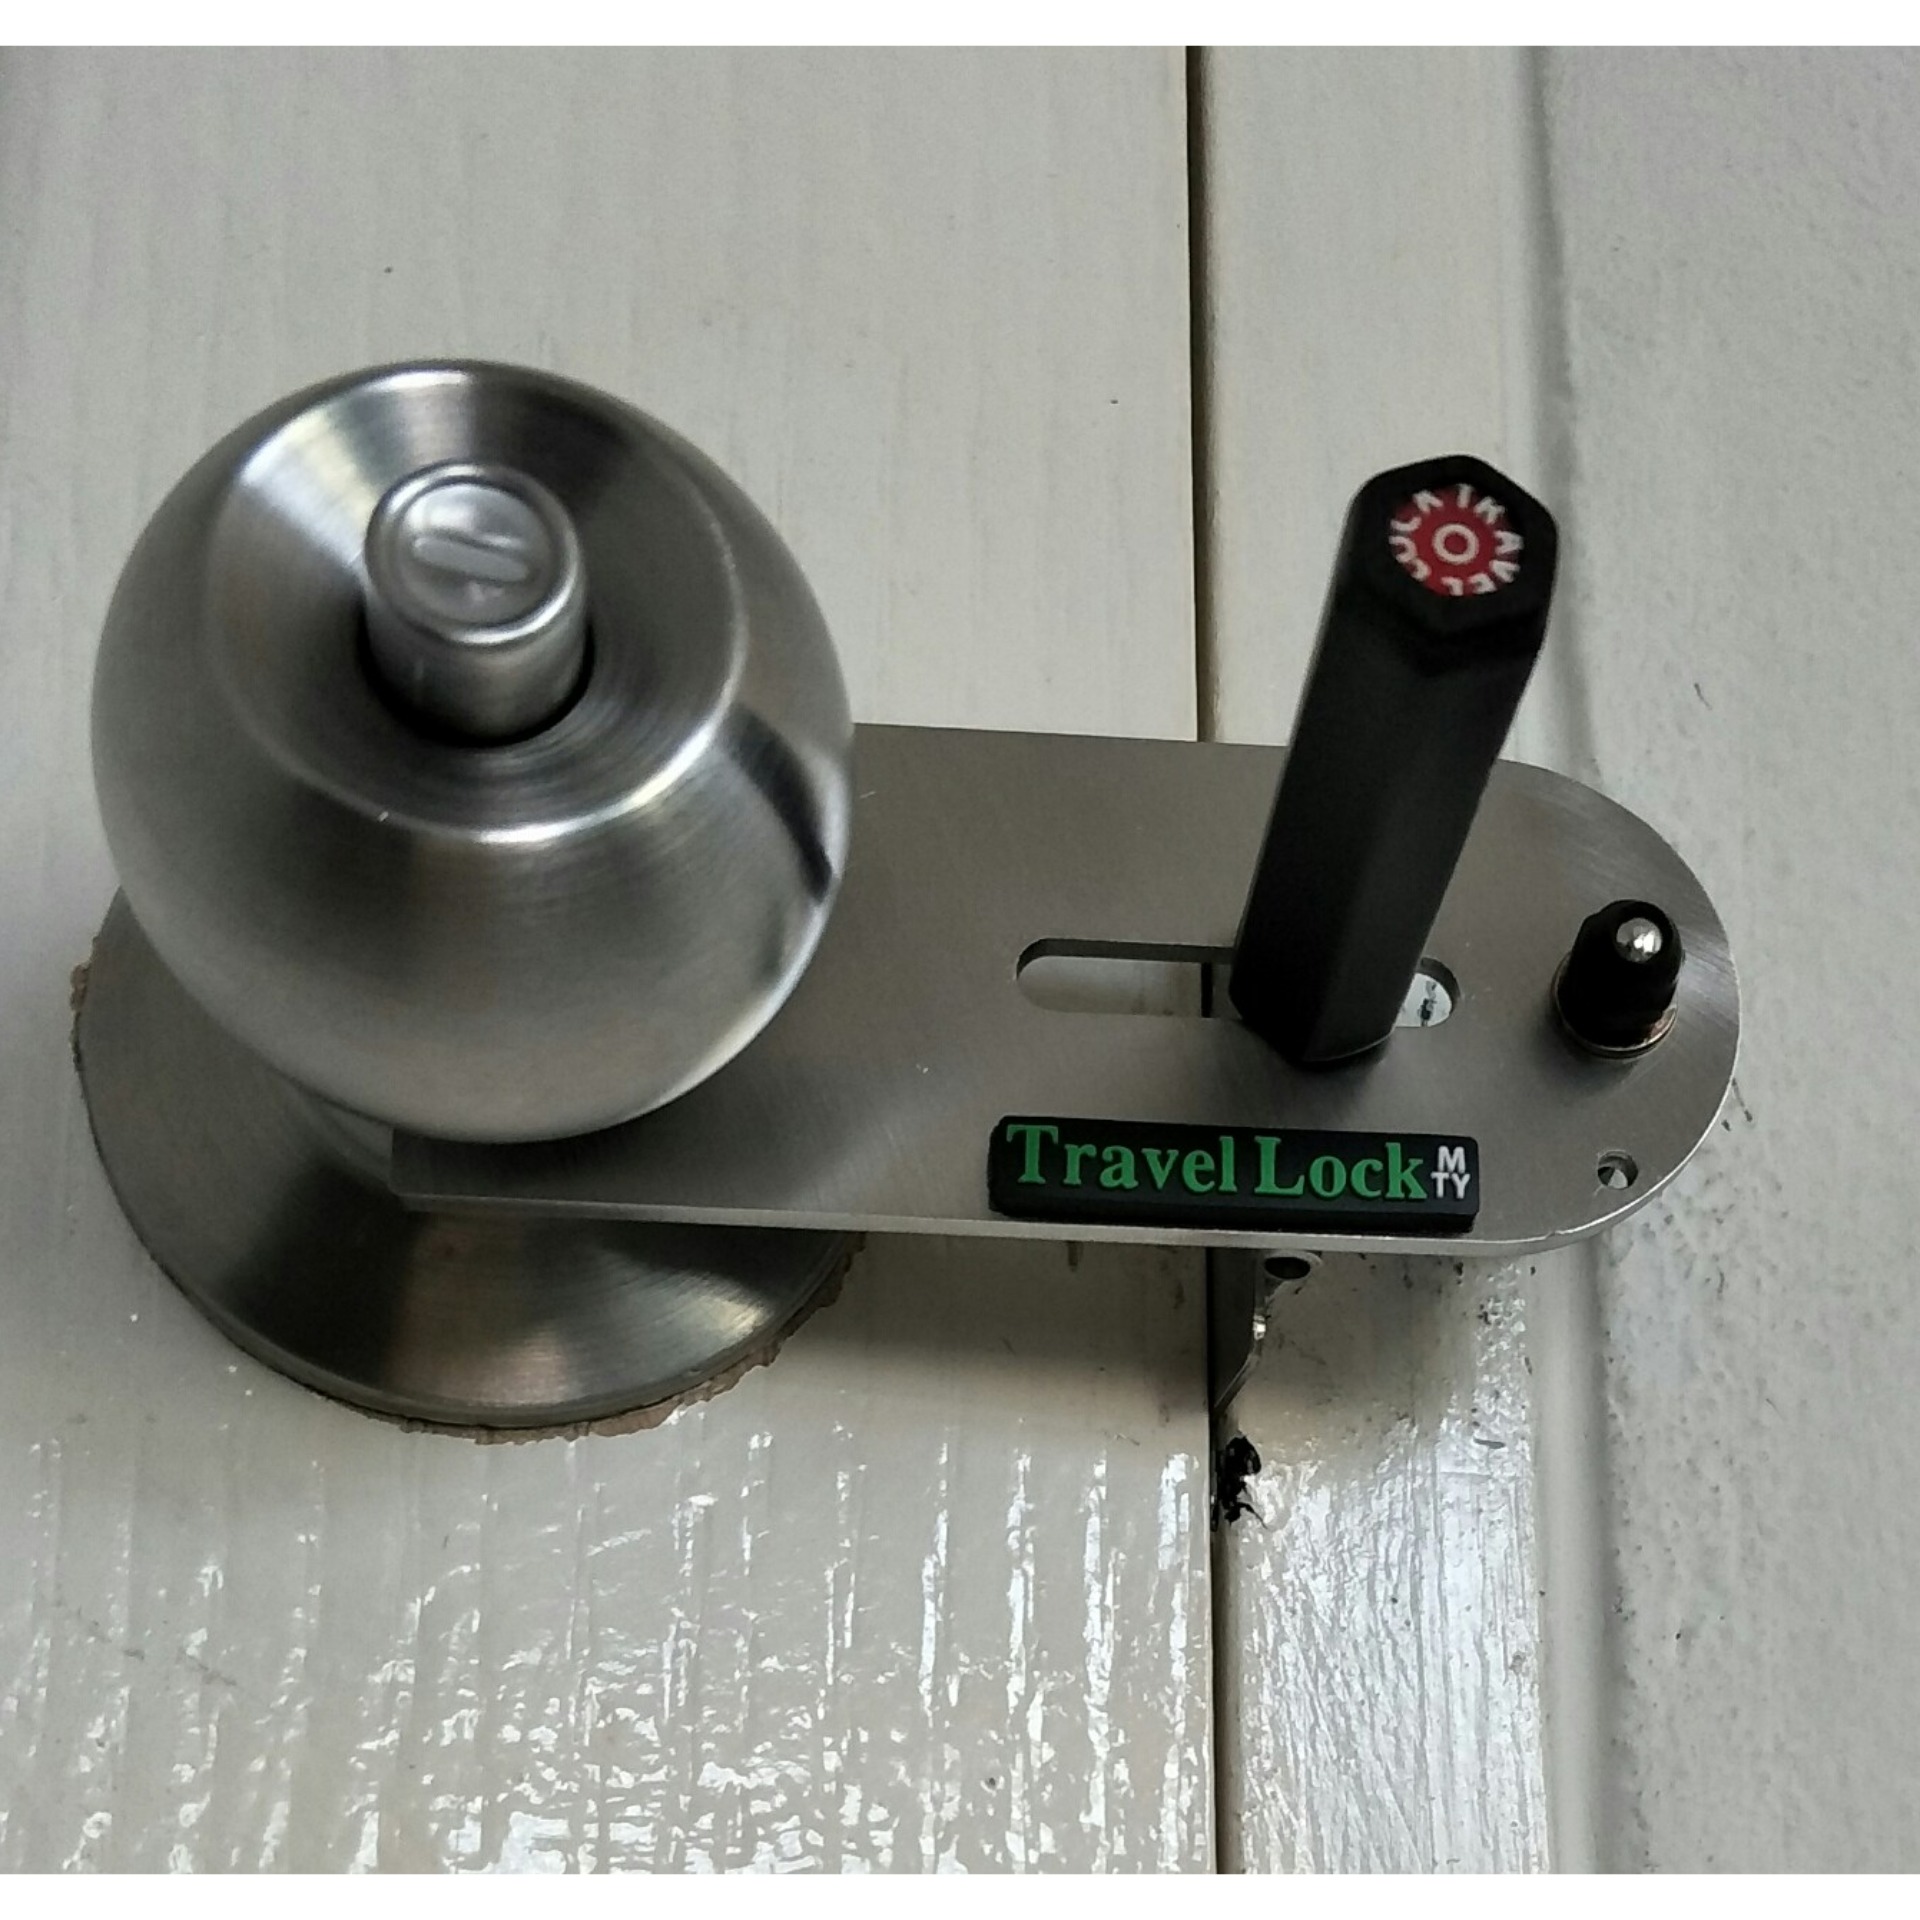 กลอนประตูไม่ต้องเจาะ Travel Lock (TL01) ใช้ล็อคประตูจากด้านใน, เปิดเข้าด้านใน แทนกลอนได้เลย ที่ล็อคประตูแบบพกพา ช่วยคุณปลอดภัยขึ้น